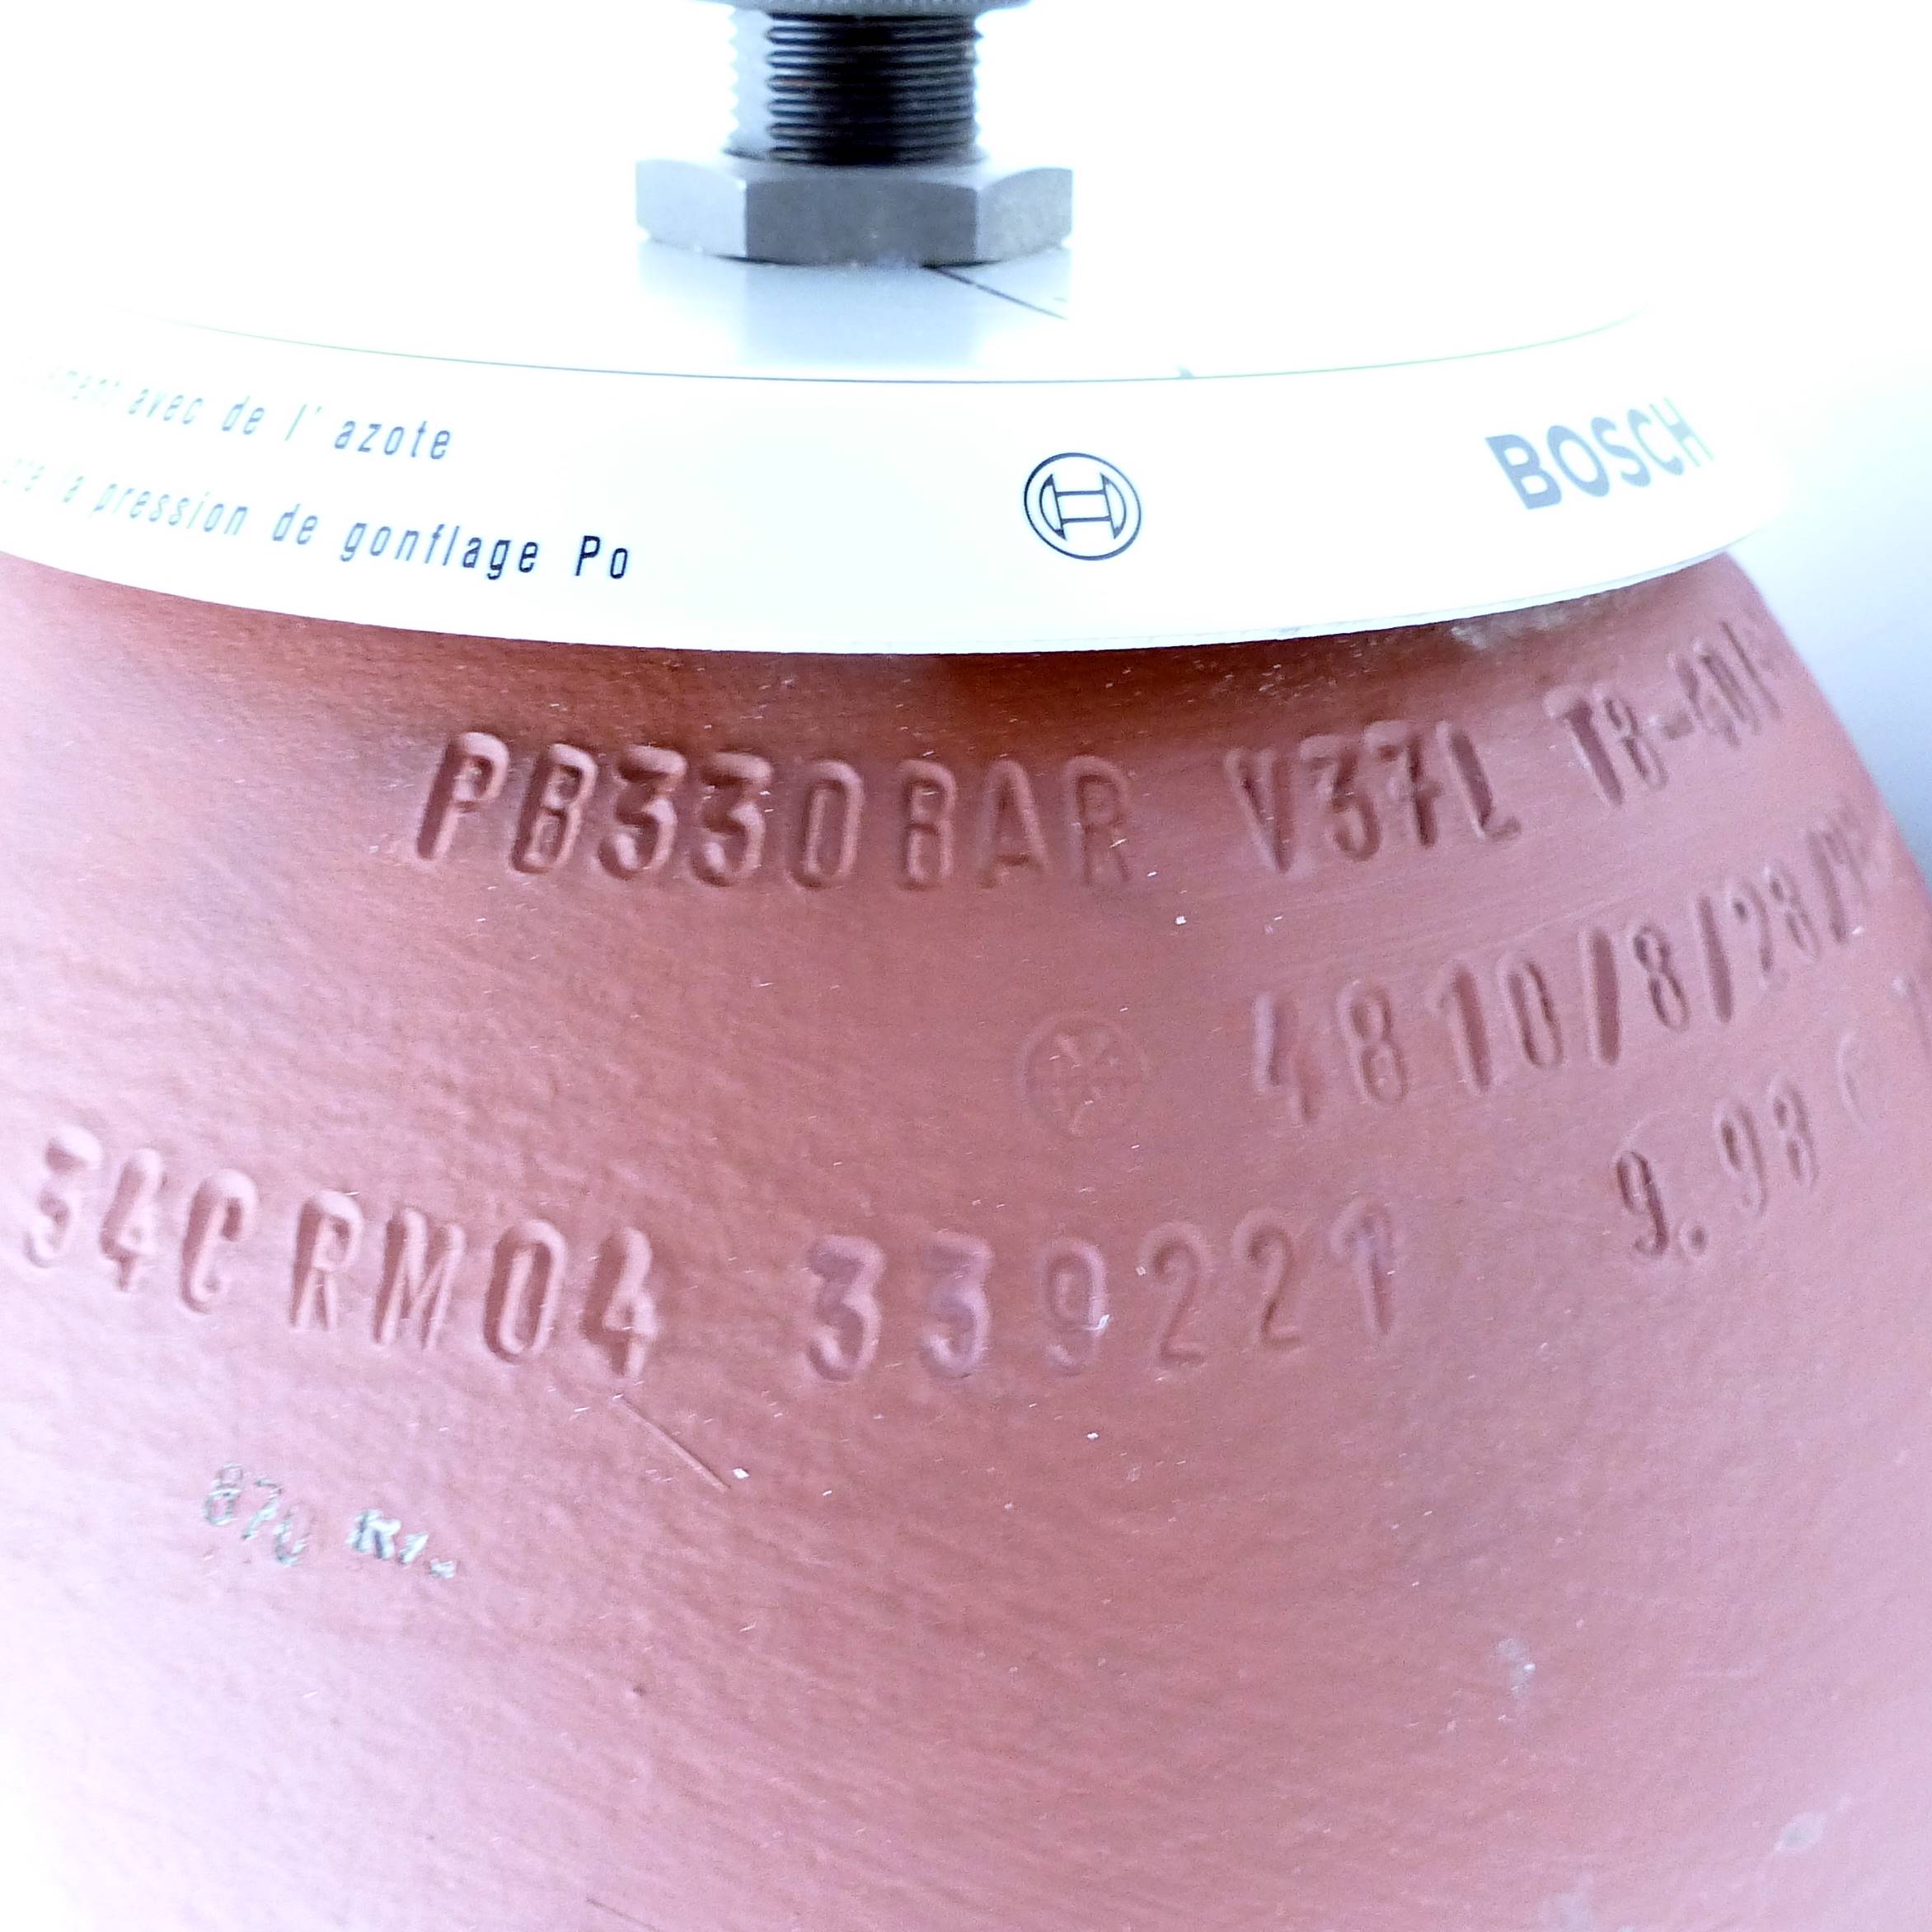 Pressure Vessel / Hydro-pneumatic accumulator 